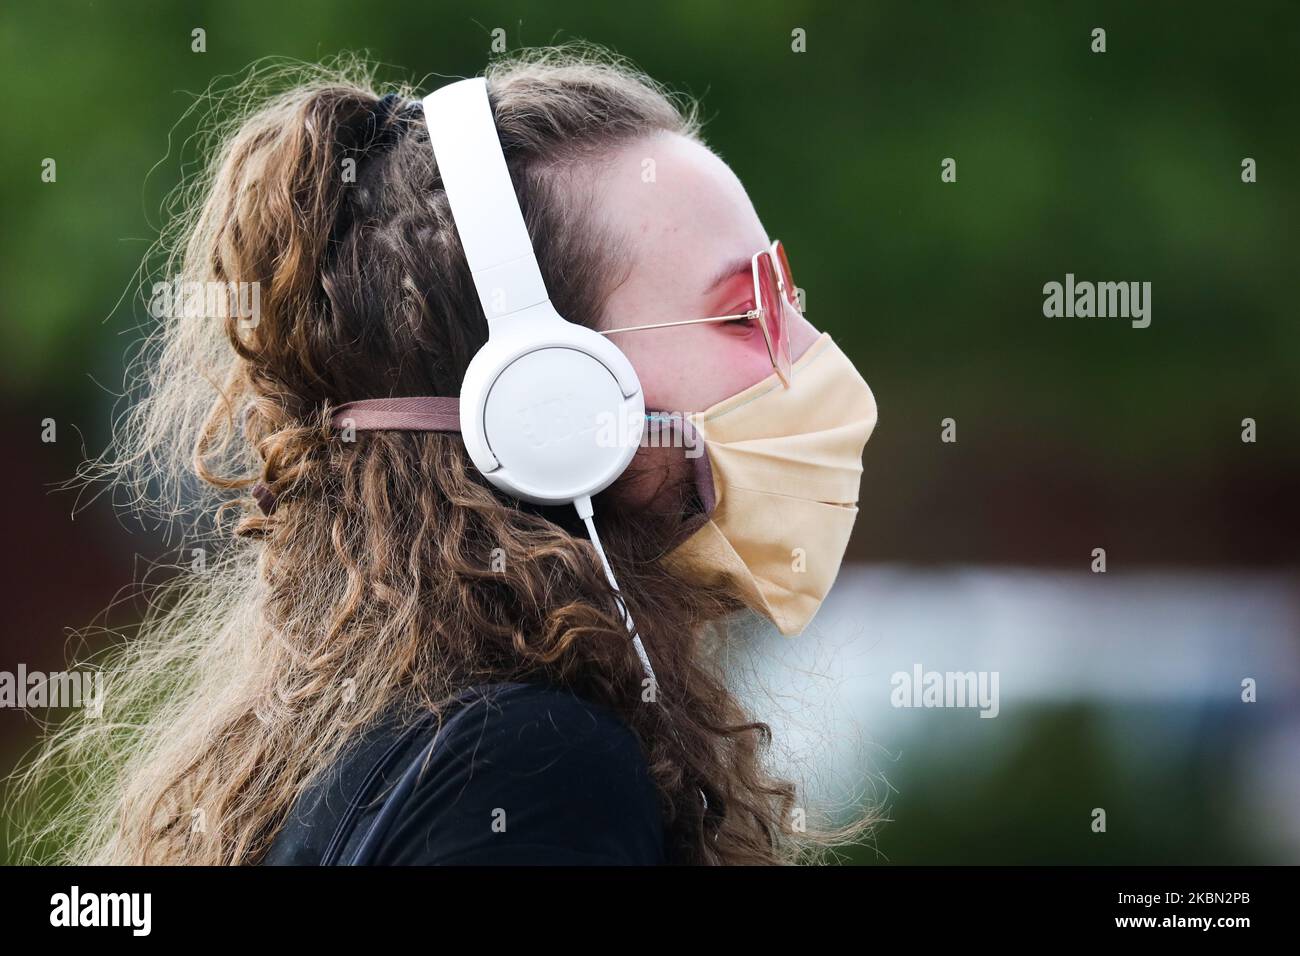 A causa della diffusione del coronavirus, una ragazza indossa una maschera protettiva. Cracovia, Polonia il 28 aprile 2020. La regola di coprire il naso e la bocca in luoghi pubblici con maschere facciali, intarsi o fazzoletti è entrata in vigore dall'aprile 16th. L'ordine non si applica ai bambini fino all'età di due anni e alle persone che non sono in grado di coprire la bocca o il naso a causa di difficoltà respiratorie. (Foto di Beata Zawrzel/NurPhoto) Foto Stock